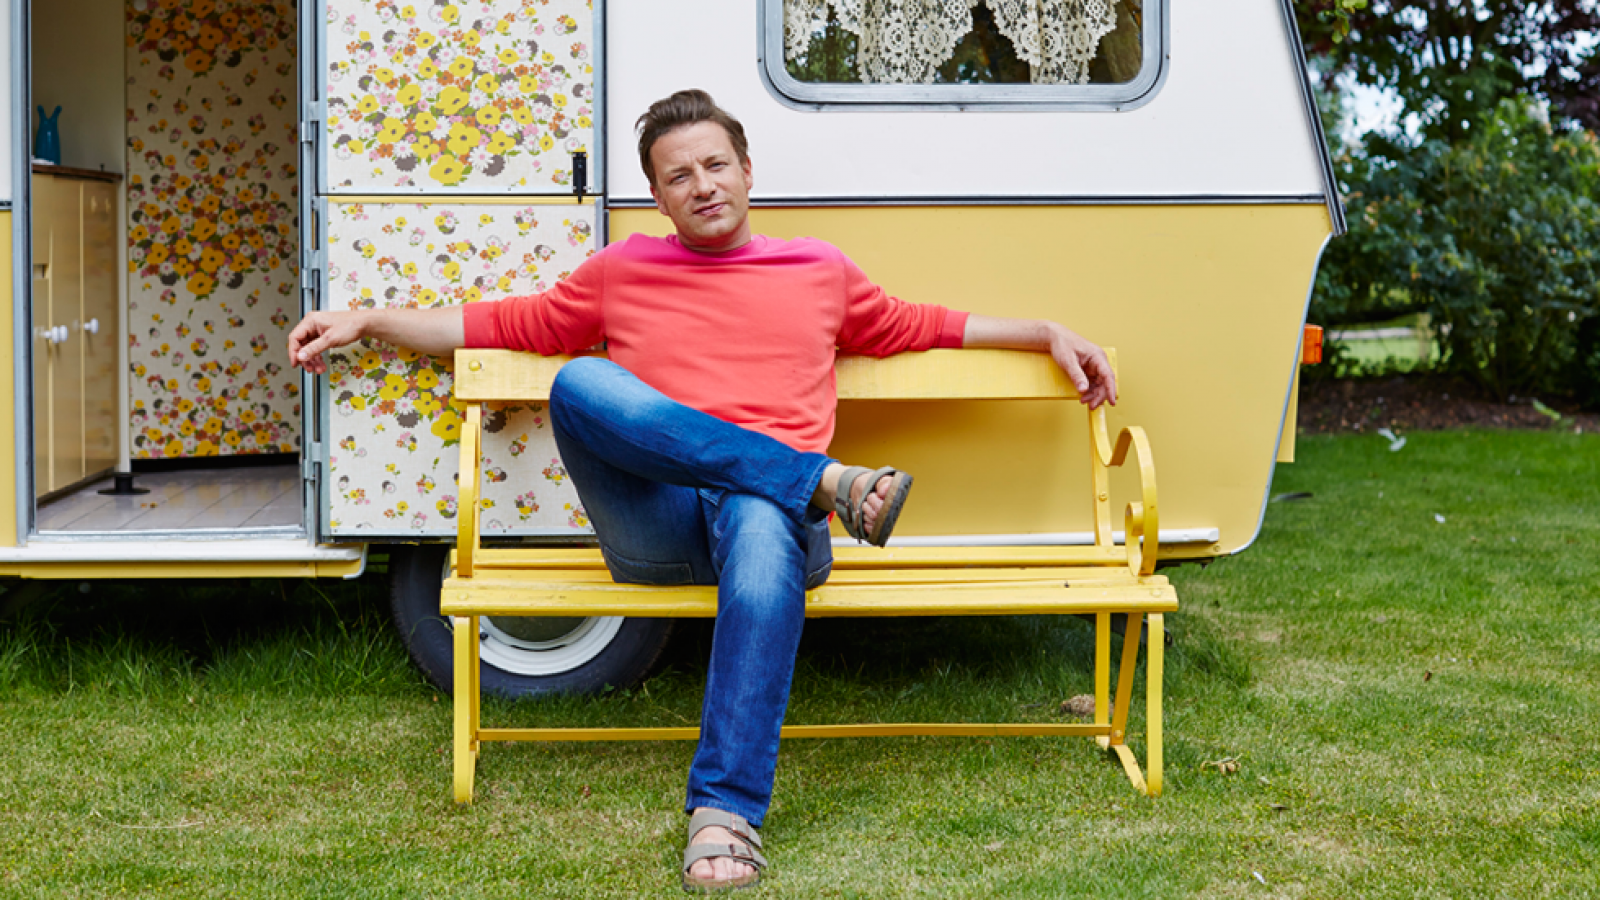 Así comienza el primer capítulo de 'Comida reconfortante' con Jamie Oliver